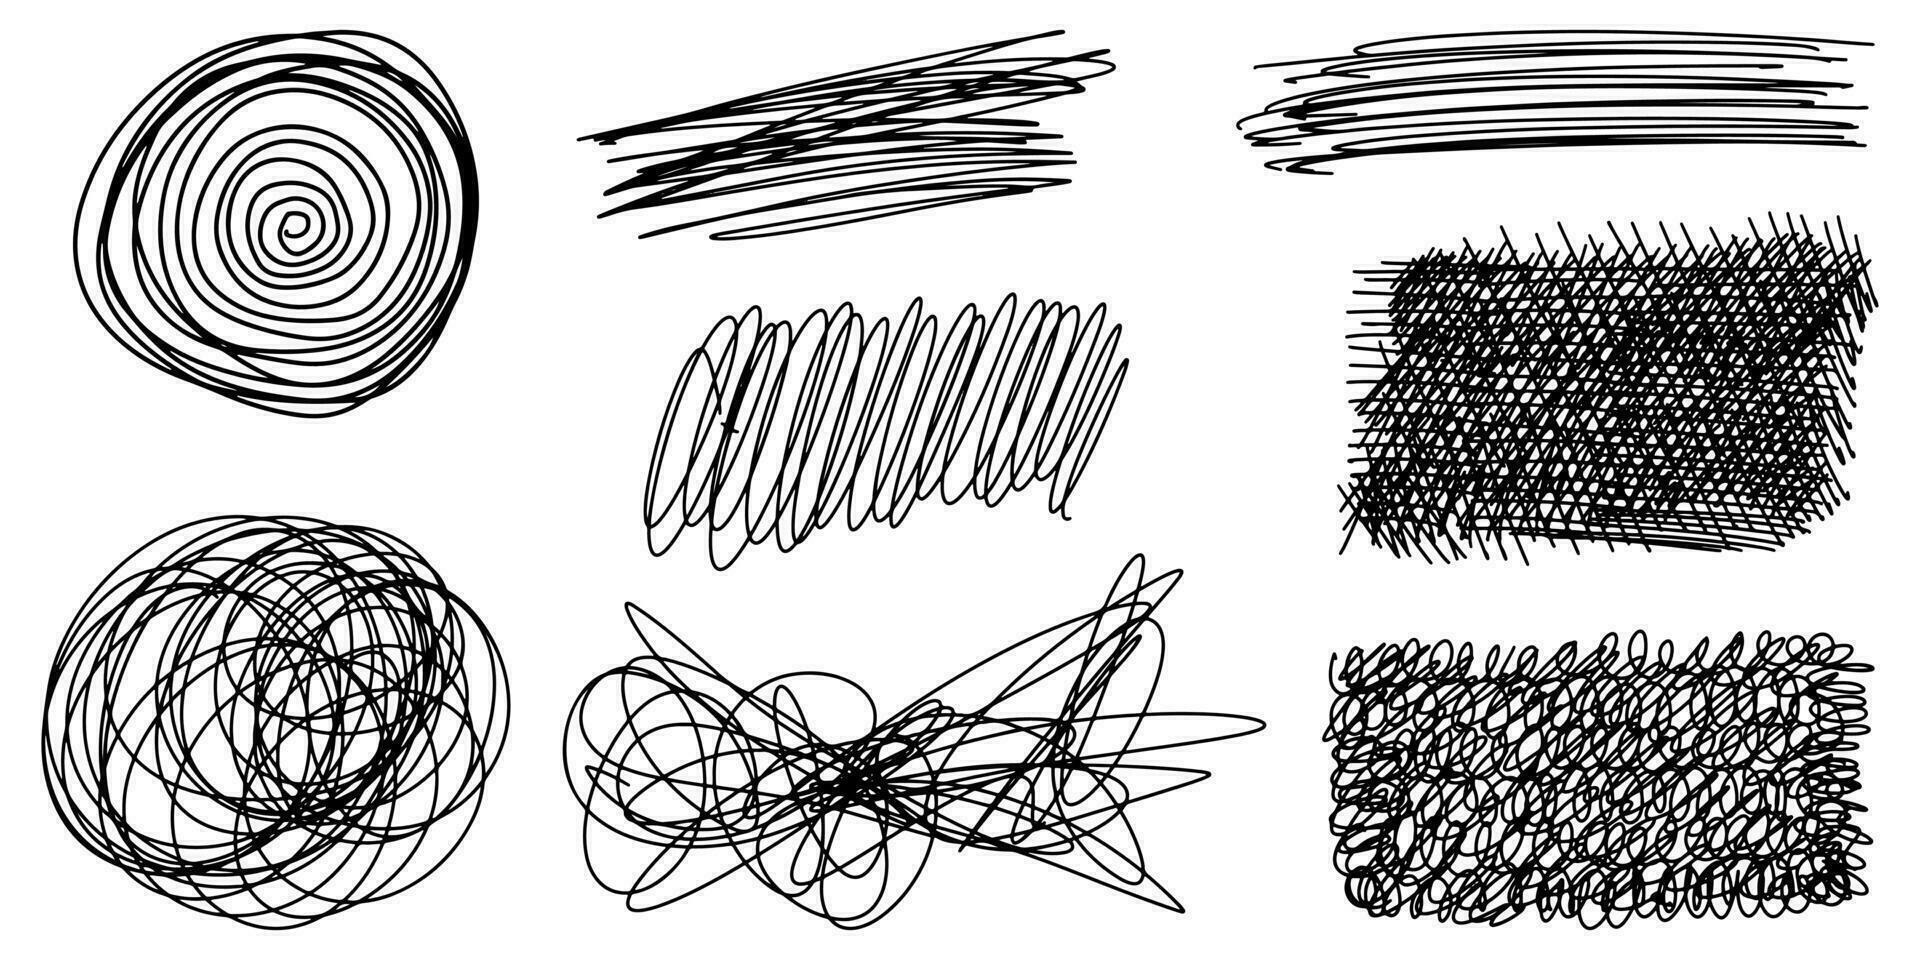 Gekritzel skizzieren Stil von skizzenhaft Stift und kritzeln Hand gezeichnet Illustration zum Konzept Design. vektor